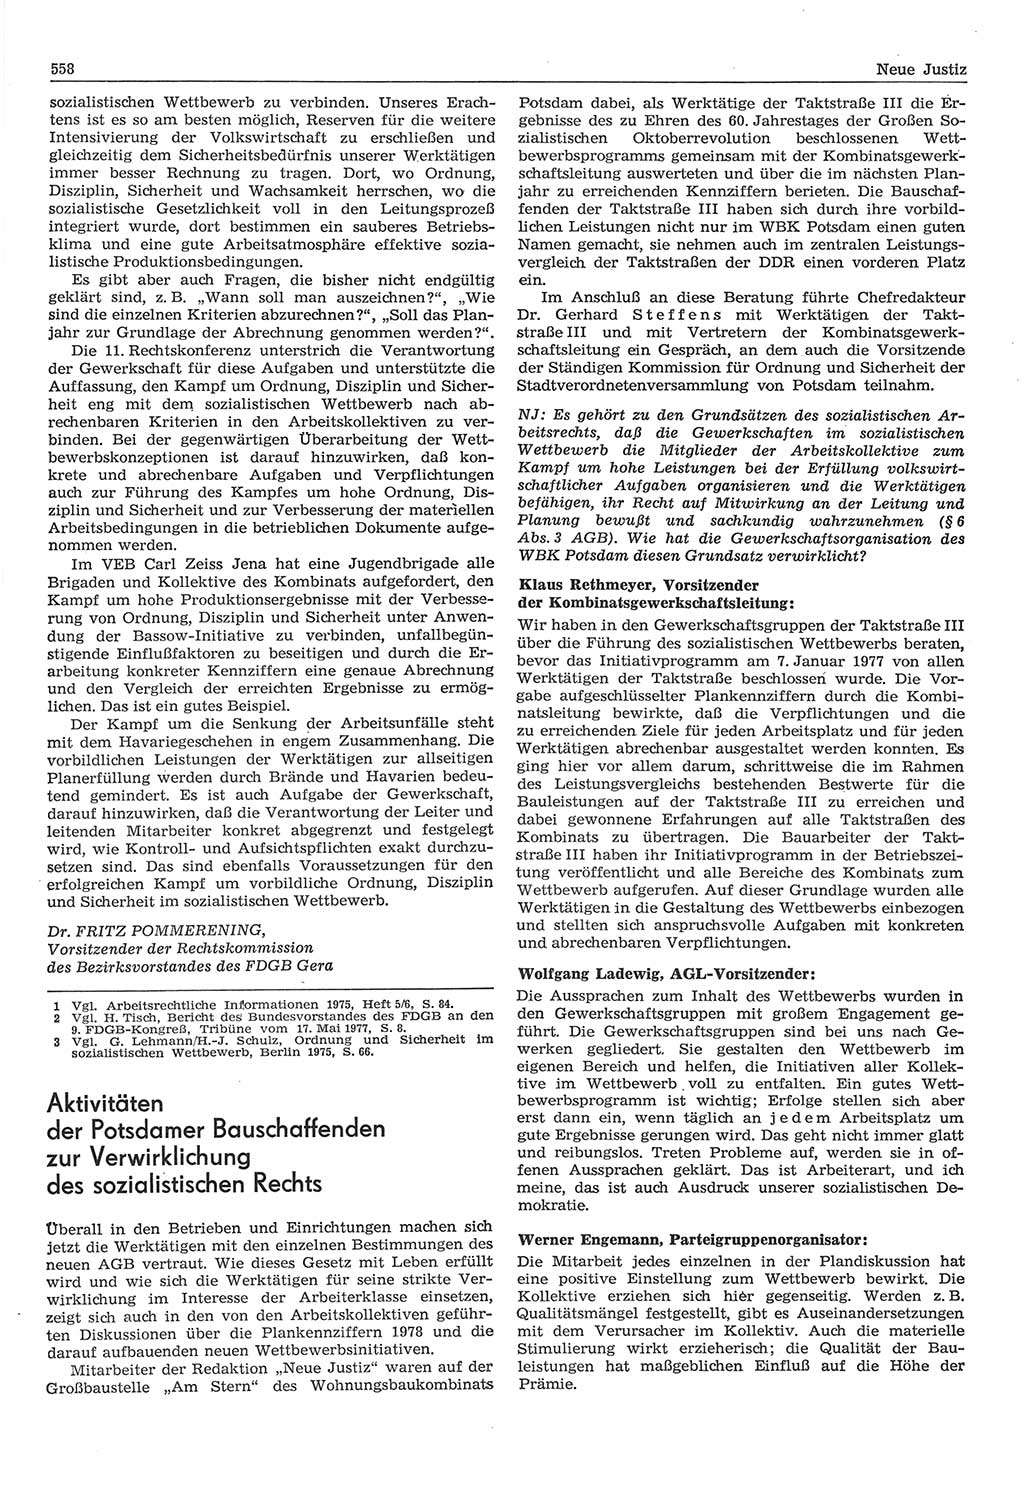 Neue Justiz (NJ), Zeitschrift für Recht und Rechtswissenschaft-Zeitschrift, sozialistisches Recht und Gesetzlichkeit, 31. Jahrgang 1977, Seite 558 (NJ DDR 1977, S. 558)